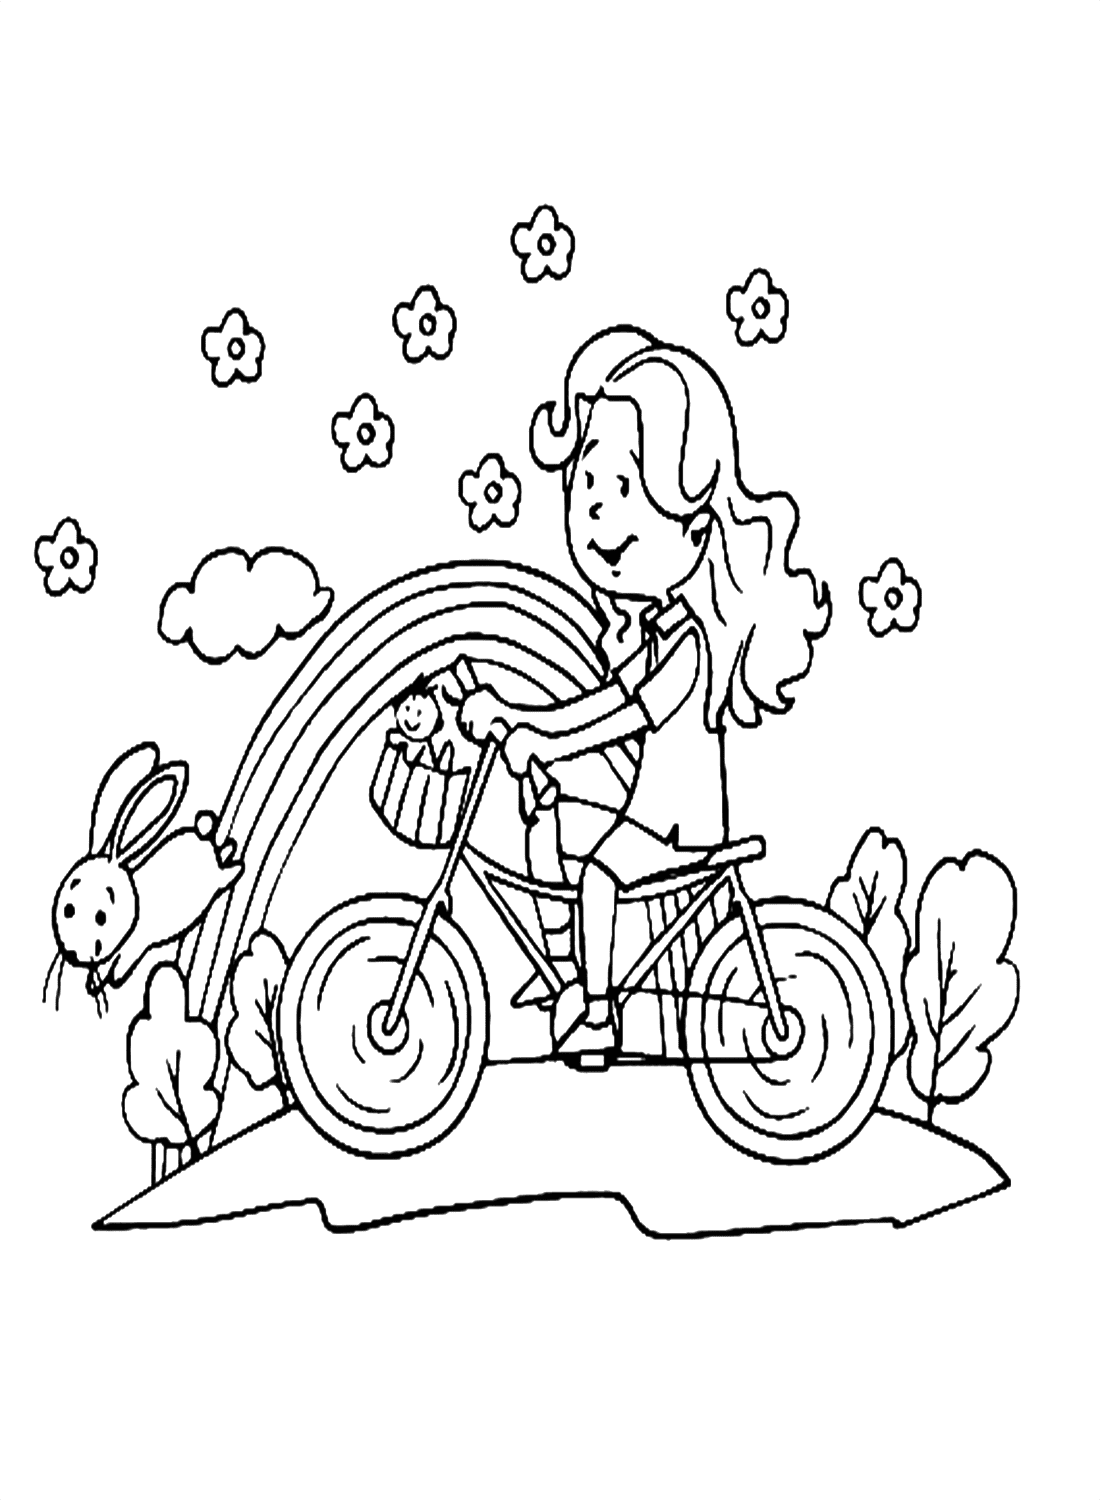 Uma linda garota andando de bicicleta para colorir